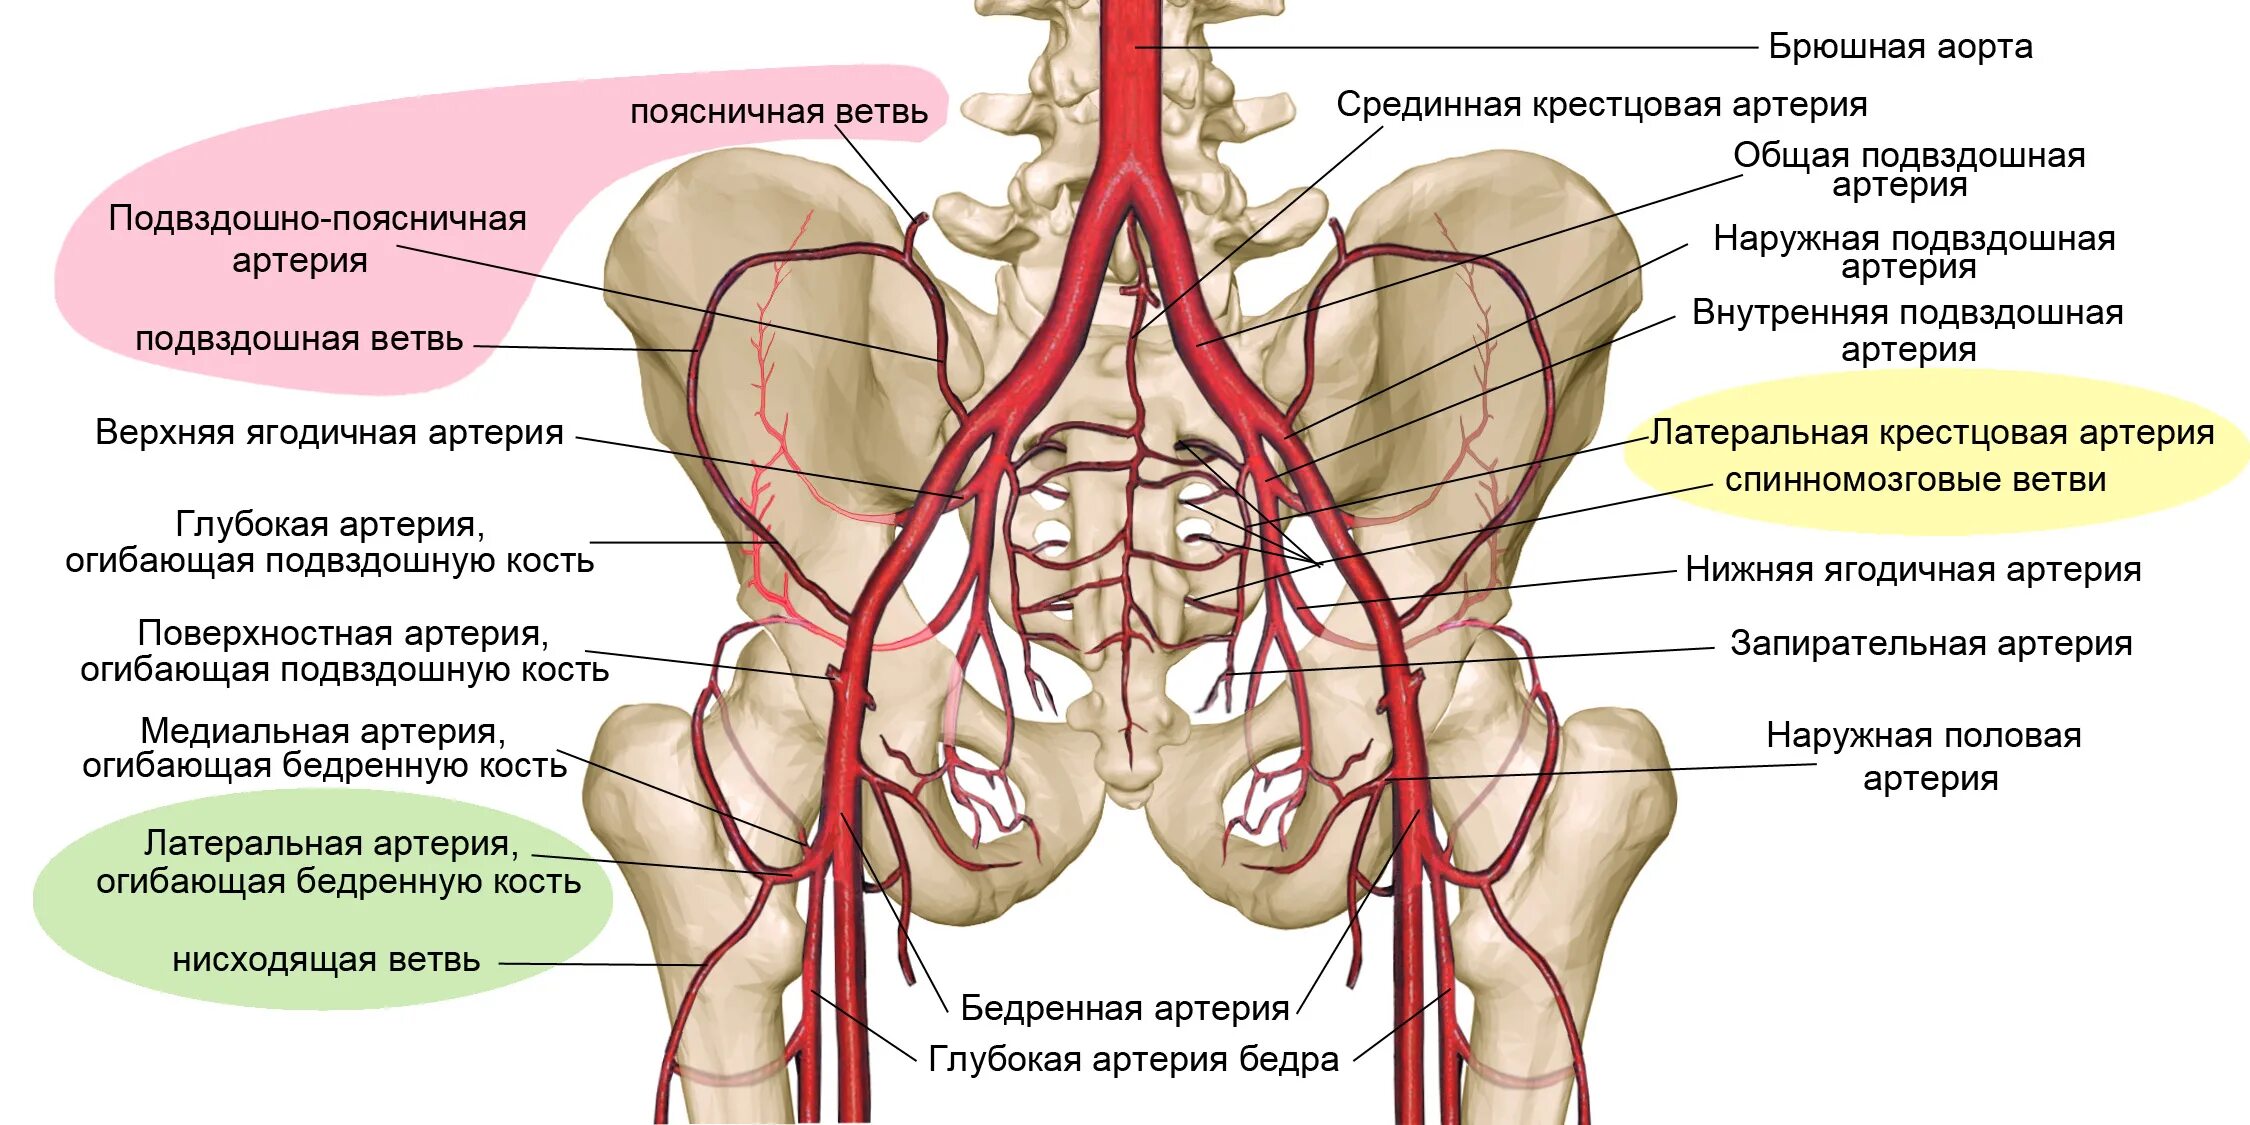 Ветви внутренней подвздошной артерии. Ветви общей подвздошной артерии схема. Ветви наружной подвздошной артерии анатомия. Ветви внутренней подвздошной артерии анатомия. Кровообращение малого таза у женщин